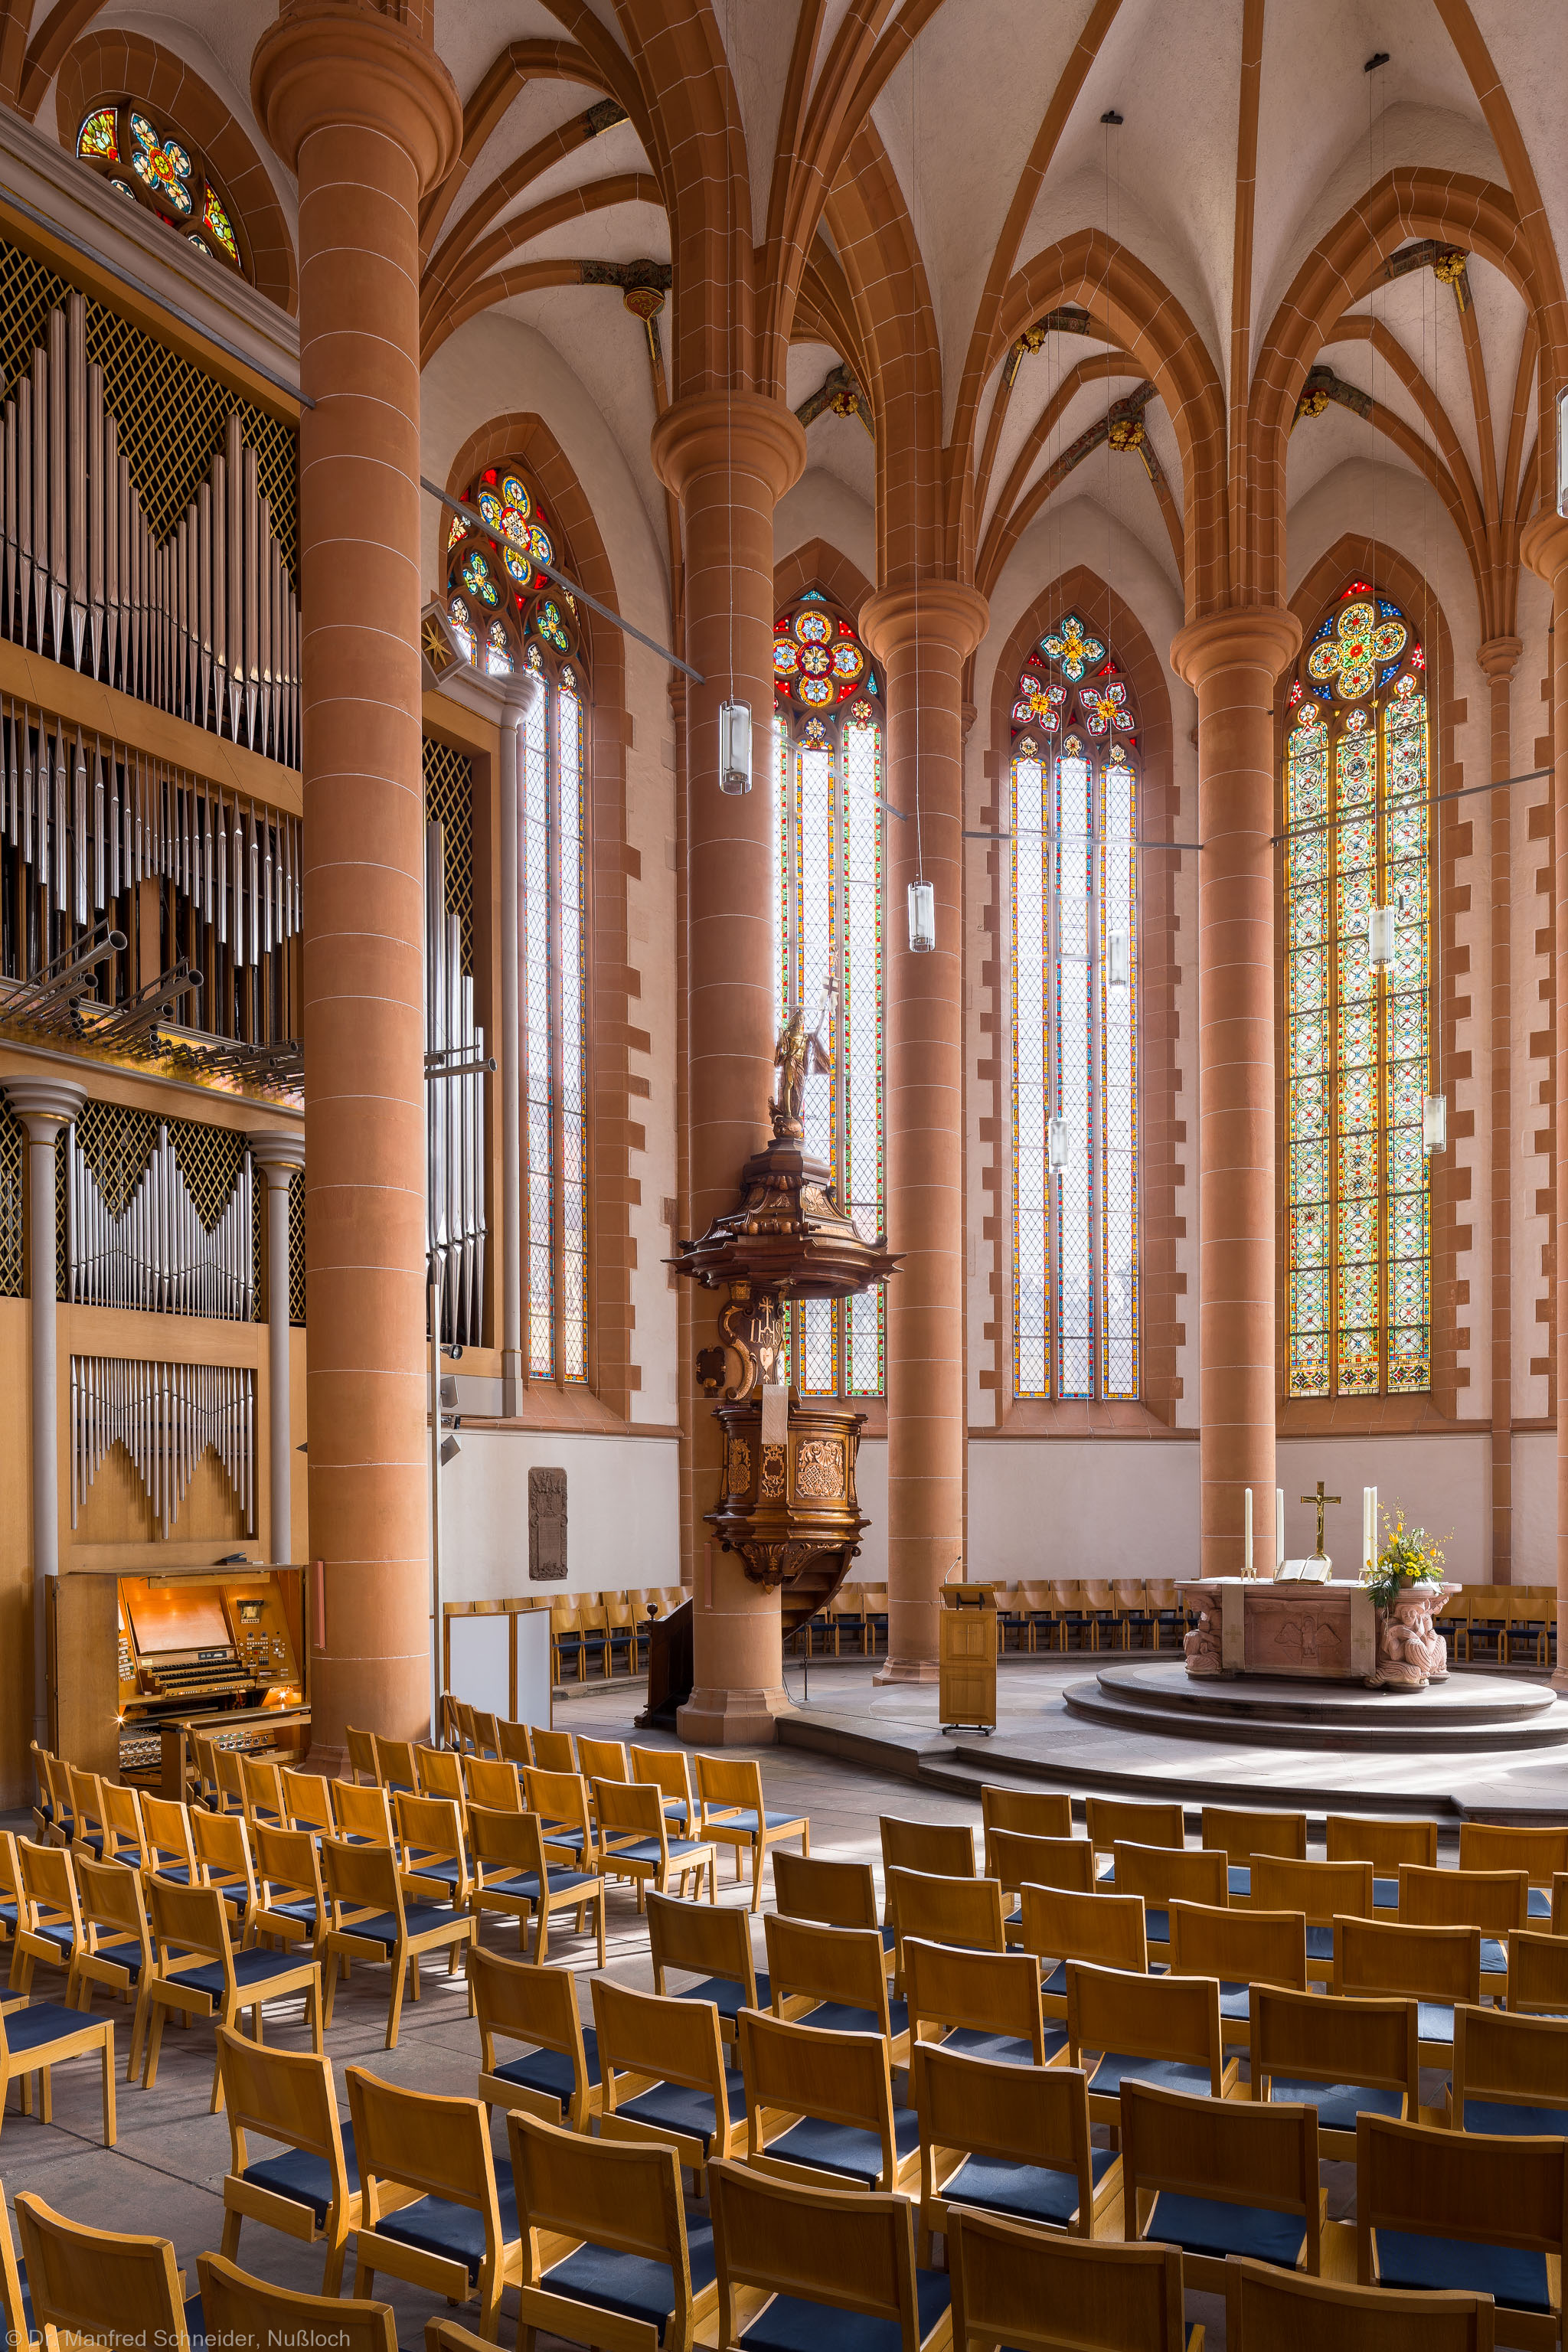 Heidelberg - Heiliggeistkirche - Chor - Blick in den Chor nach Nordosten mit Säulen, Gewölbe, Orgel, Kanzel und Altar (aufgenommen im April 2013, am Vormittag)